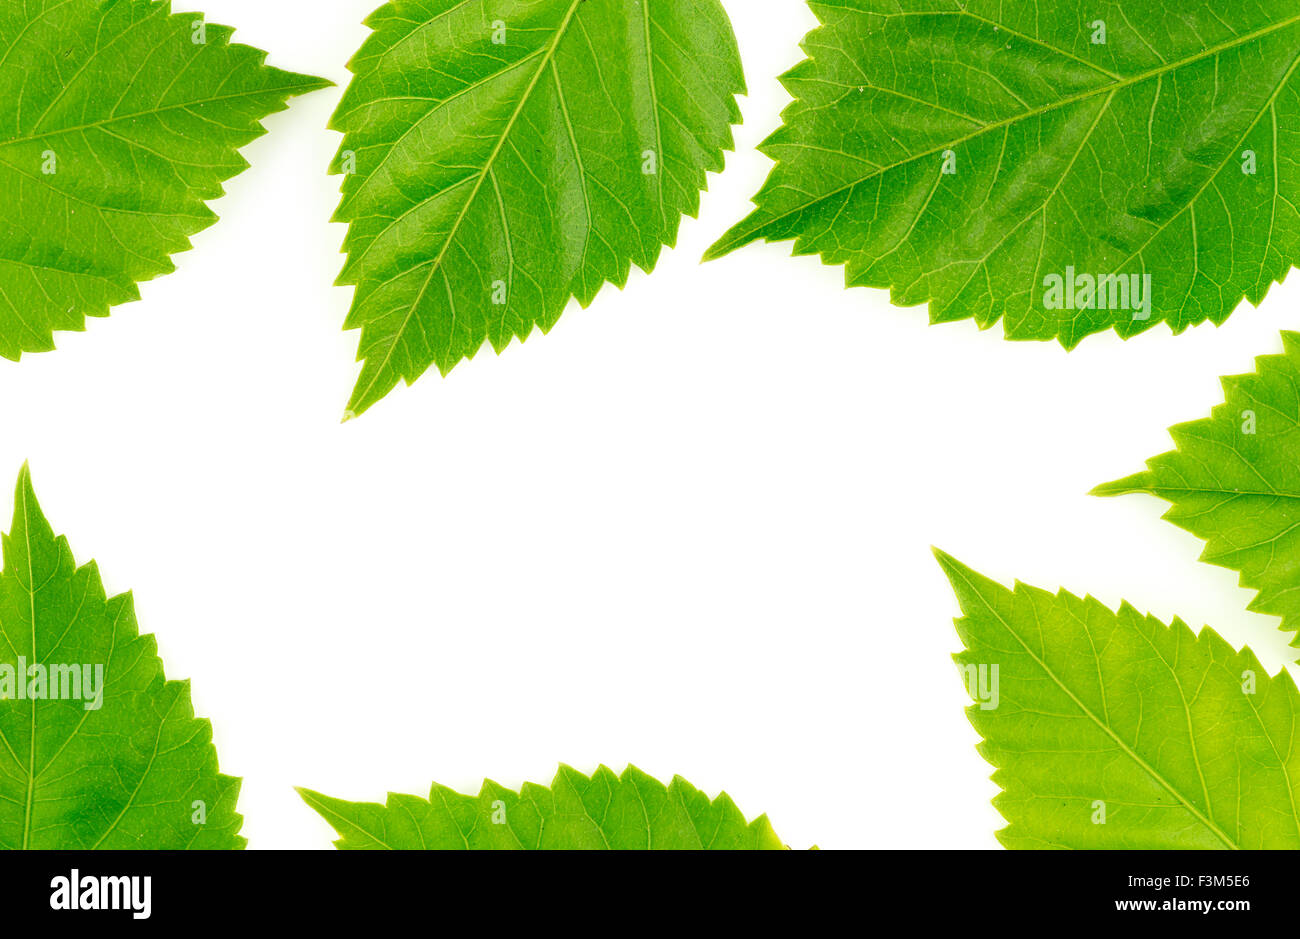 Châssis alimentation nature avec des feuilles vertes Banque D'Images